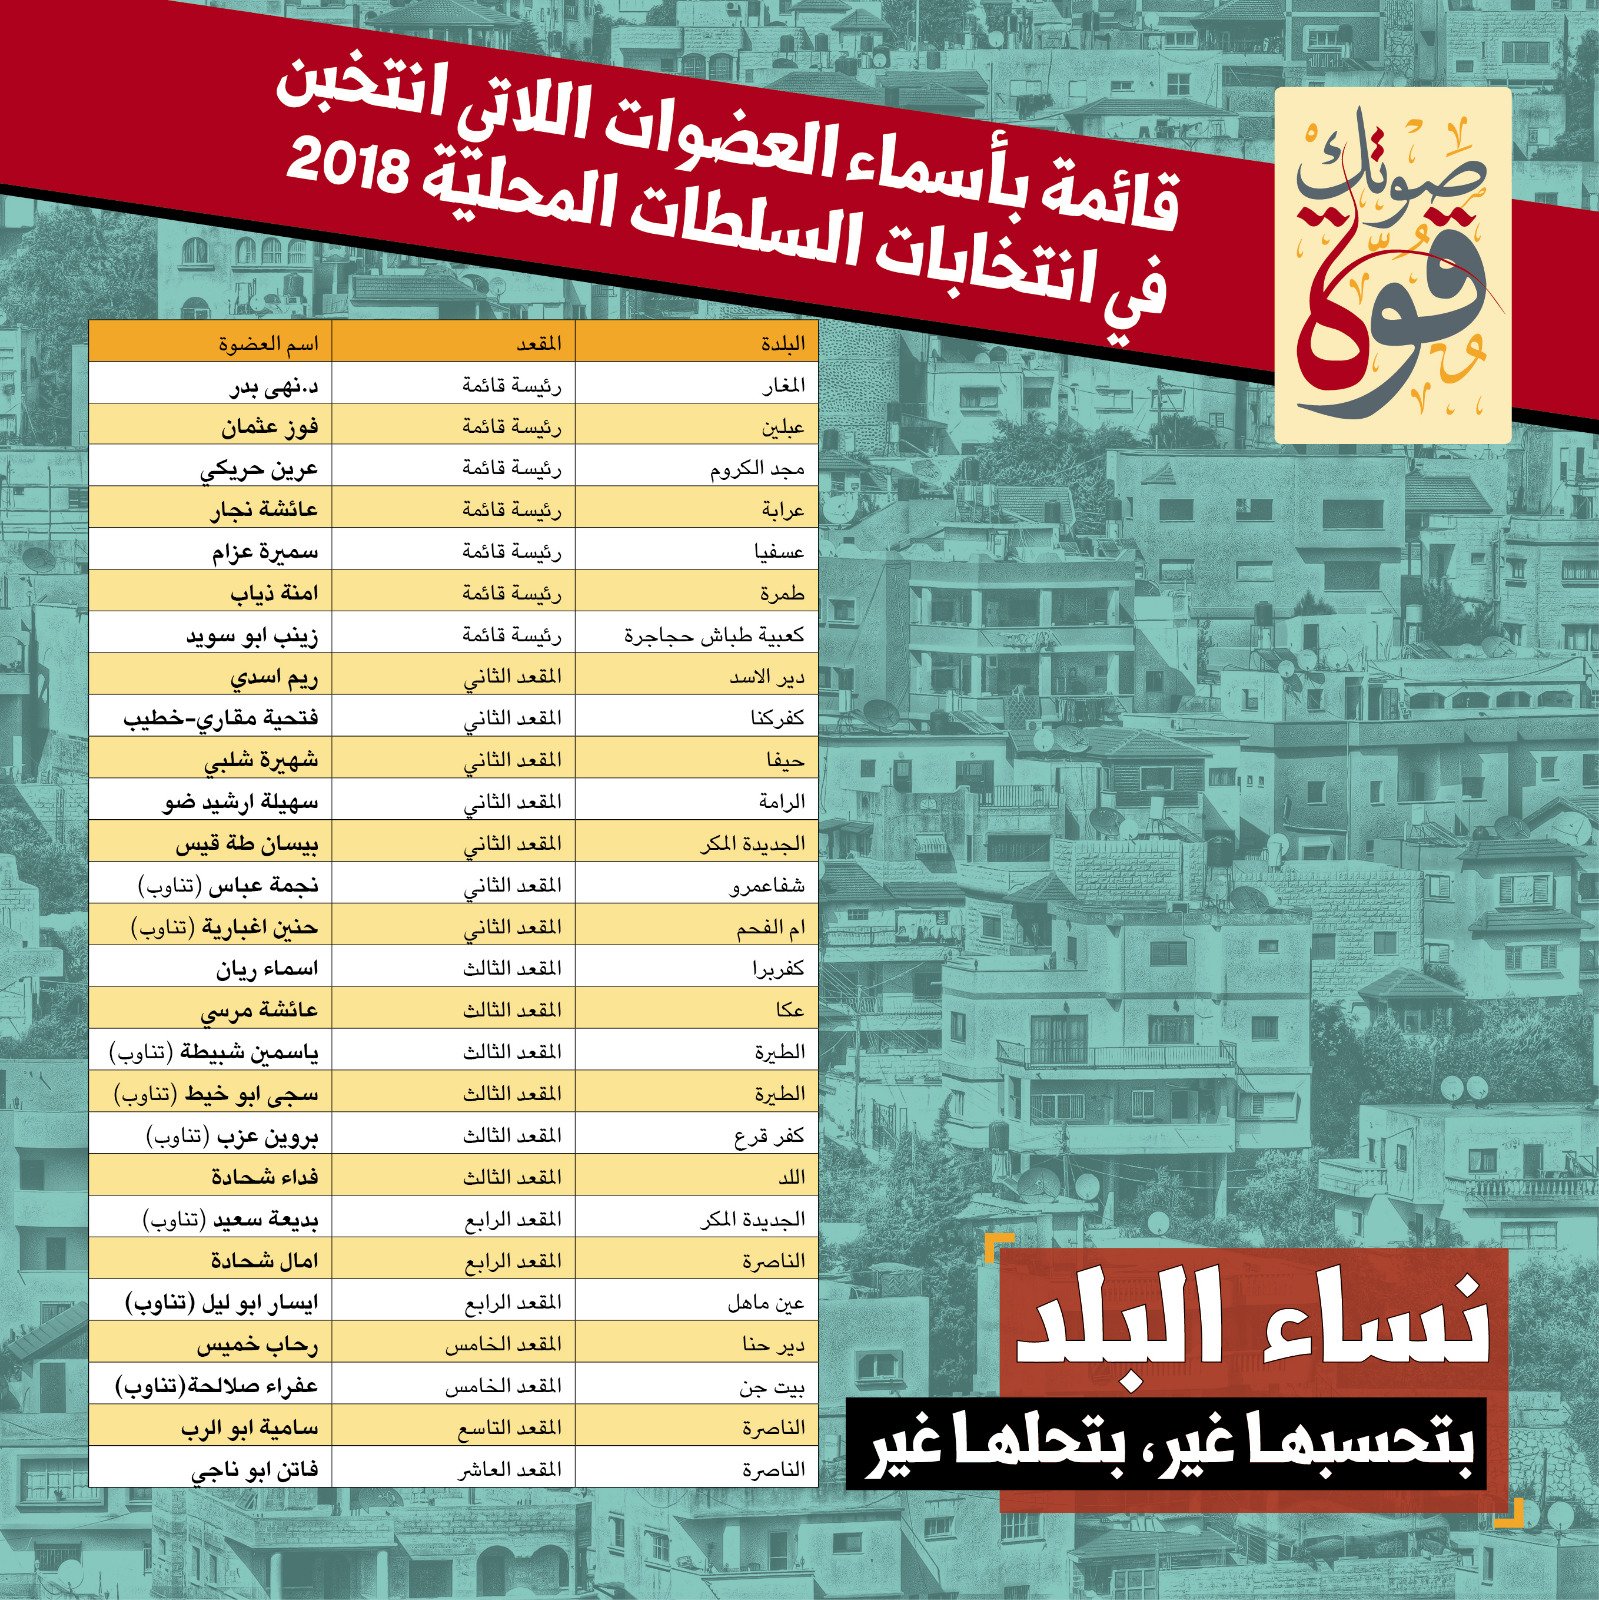 في الانتخابات الأخيرة بالمجتمع العربي: 27 مرشحة نجحن, بينهن 7 رئيسات قوائم-0